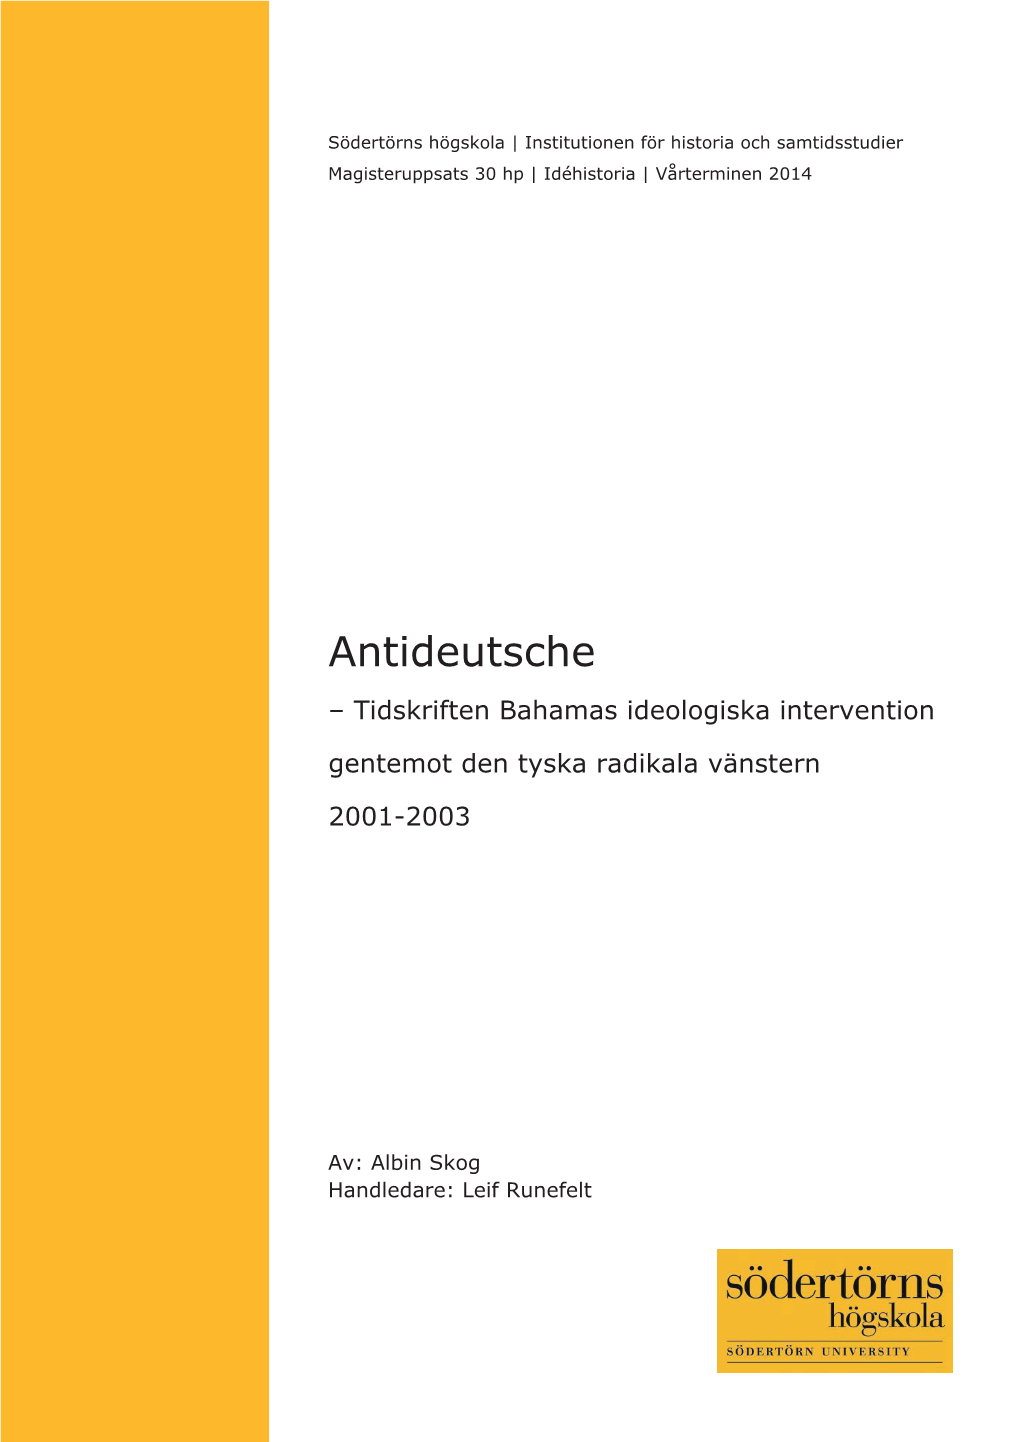 Antideutsche – Tidskriften Bahamas Ideologiska Intervention Gentemot Den Tyska Radikala Vänstern